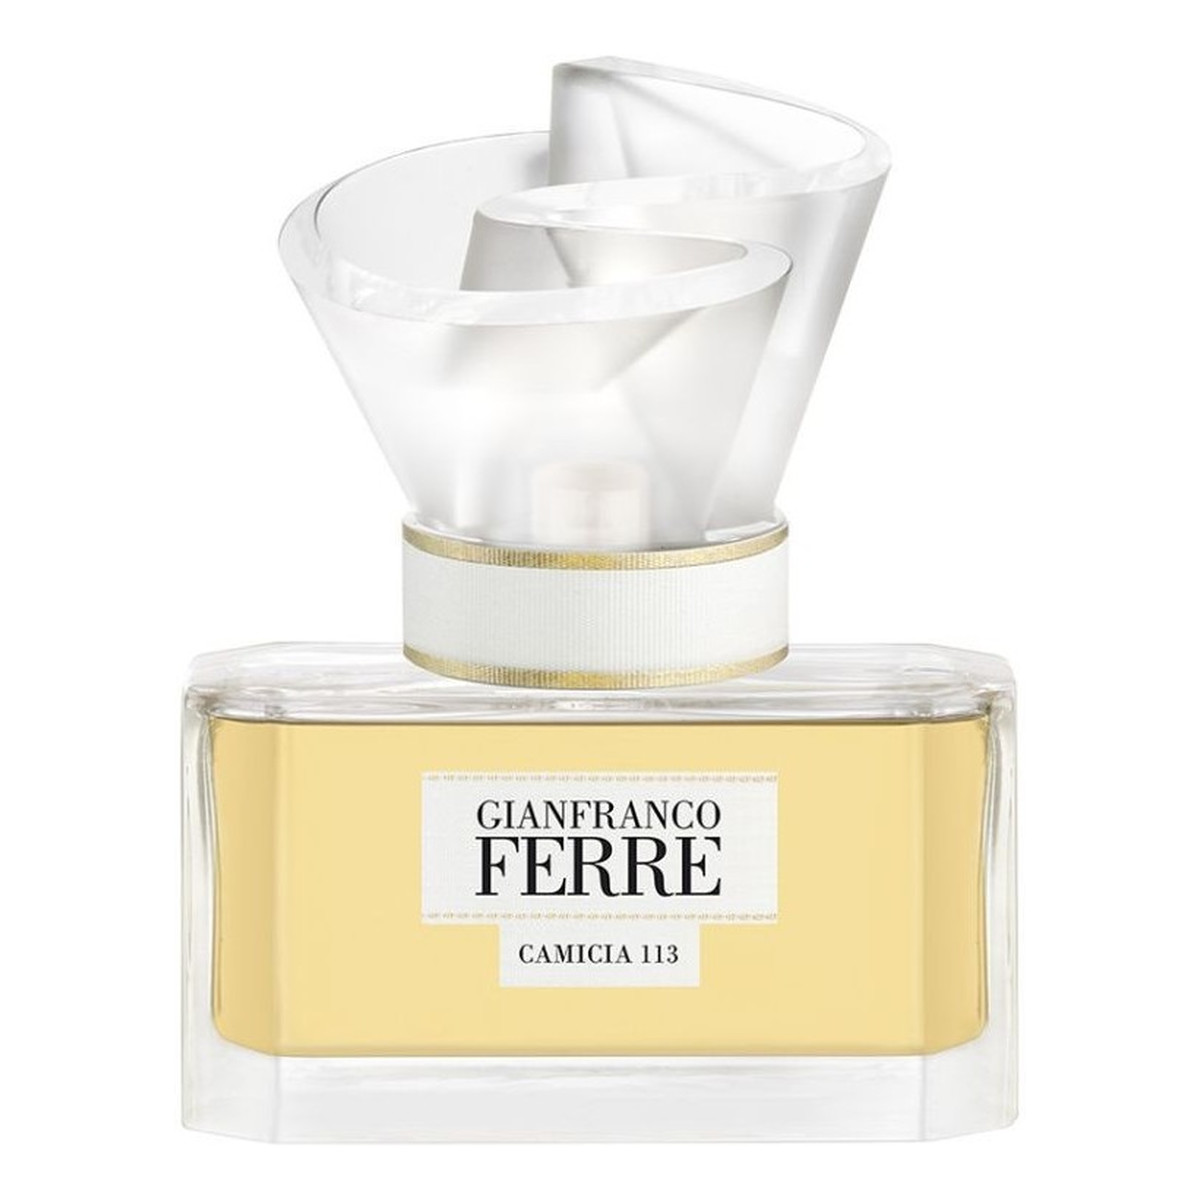 Gianfranco Ferre Camicia 113 woda perfumowana 50ml